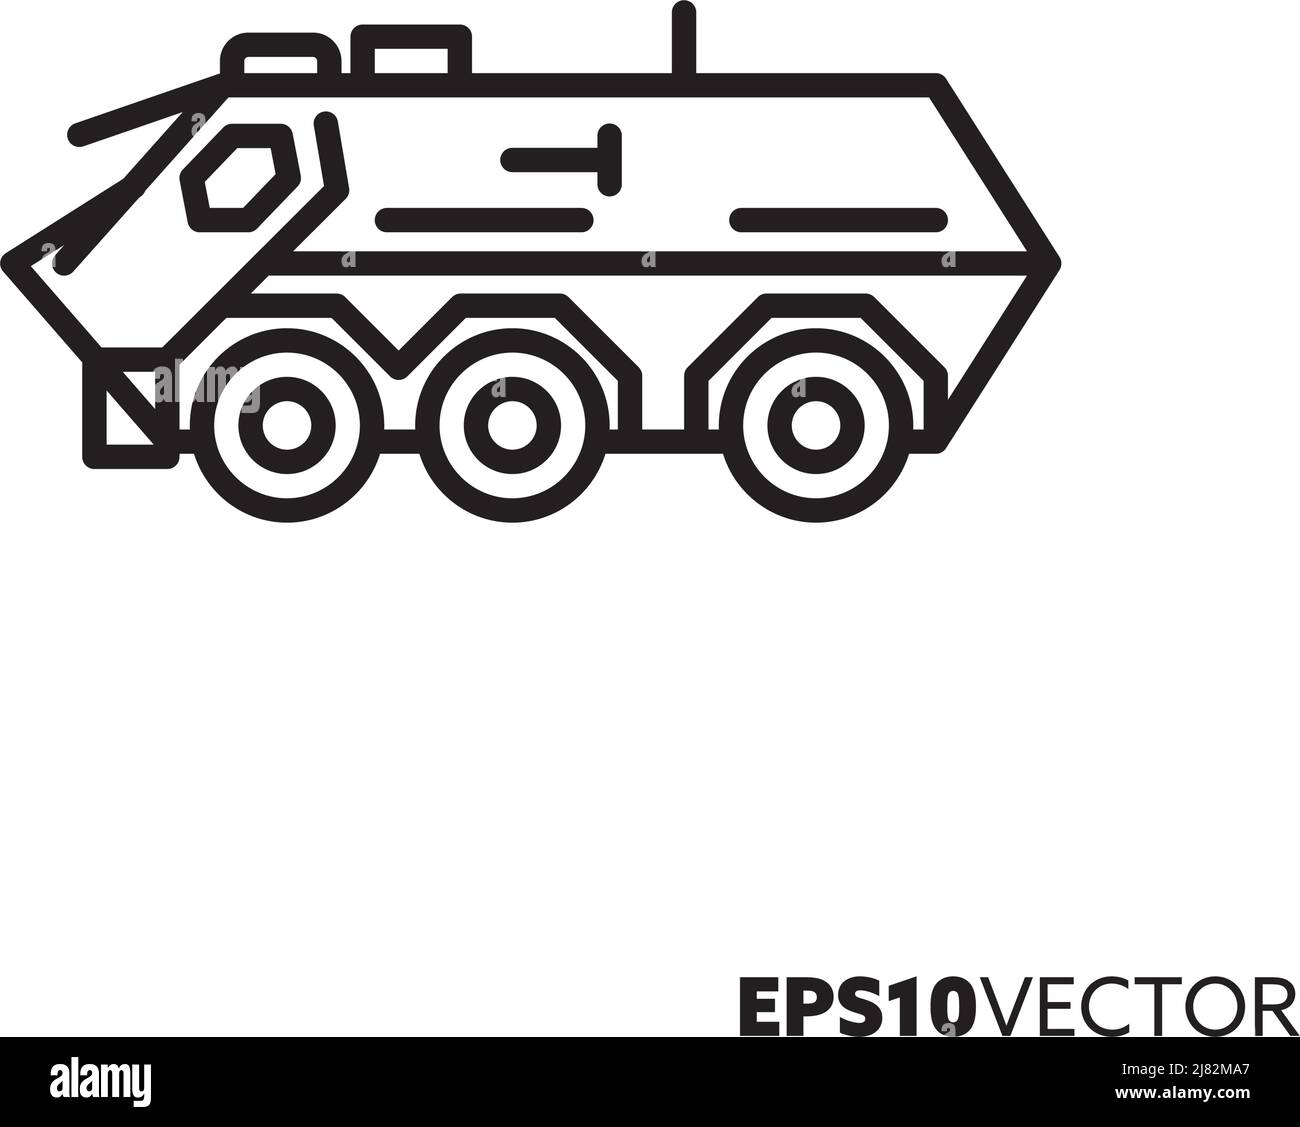 Symbol für die Vektorlinie des gepanzerten Personenträgers mit sechs Rädern. Umrisssymbol für militärische Fahrzeuge. Stock Vektor